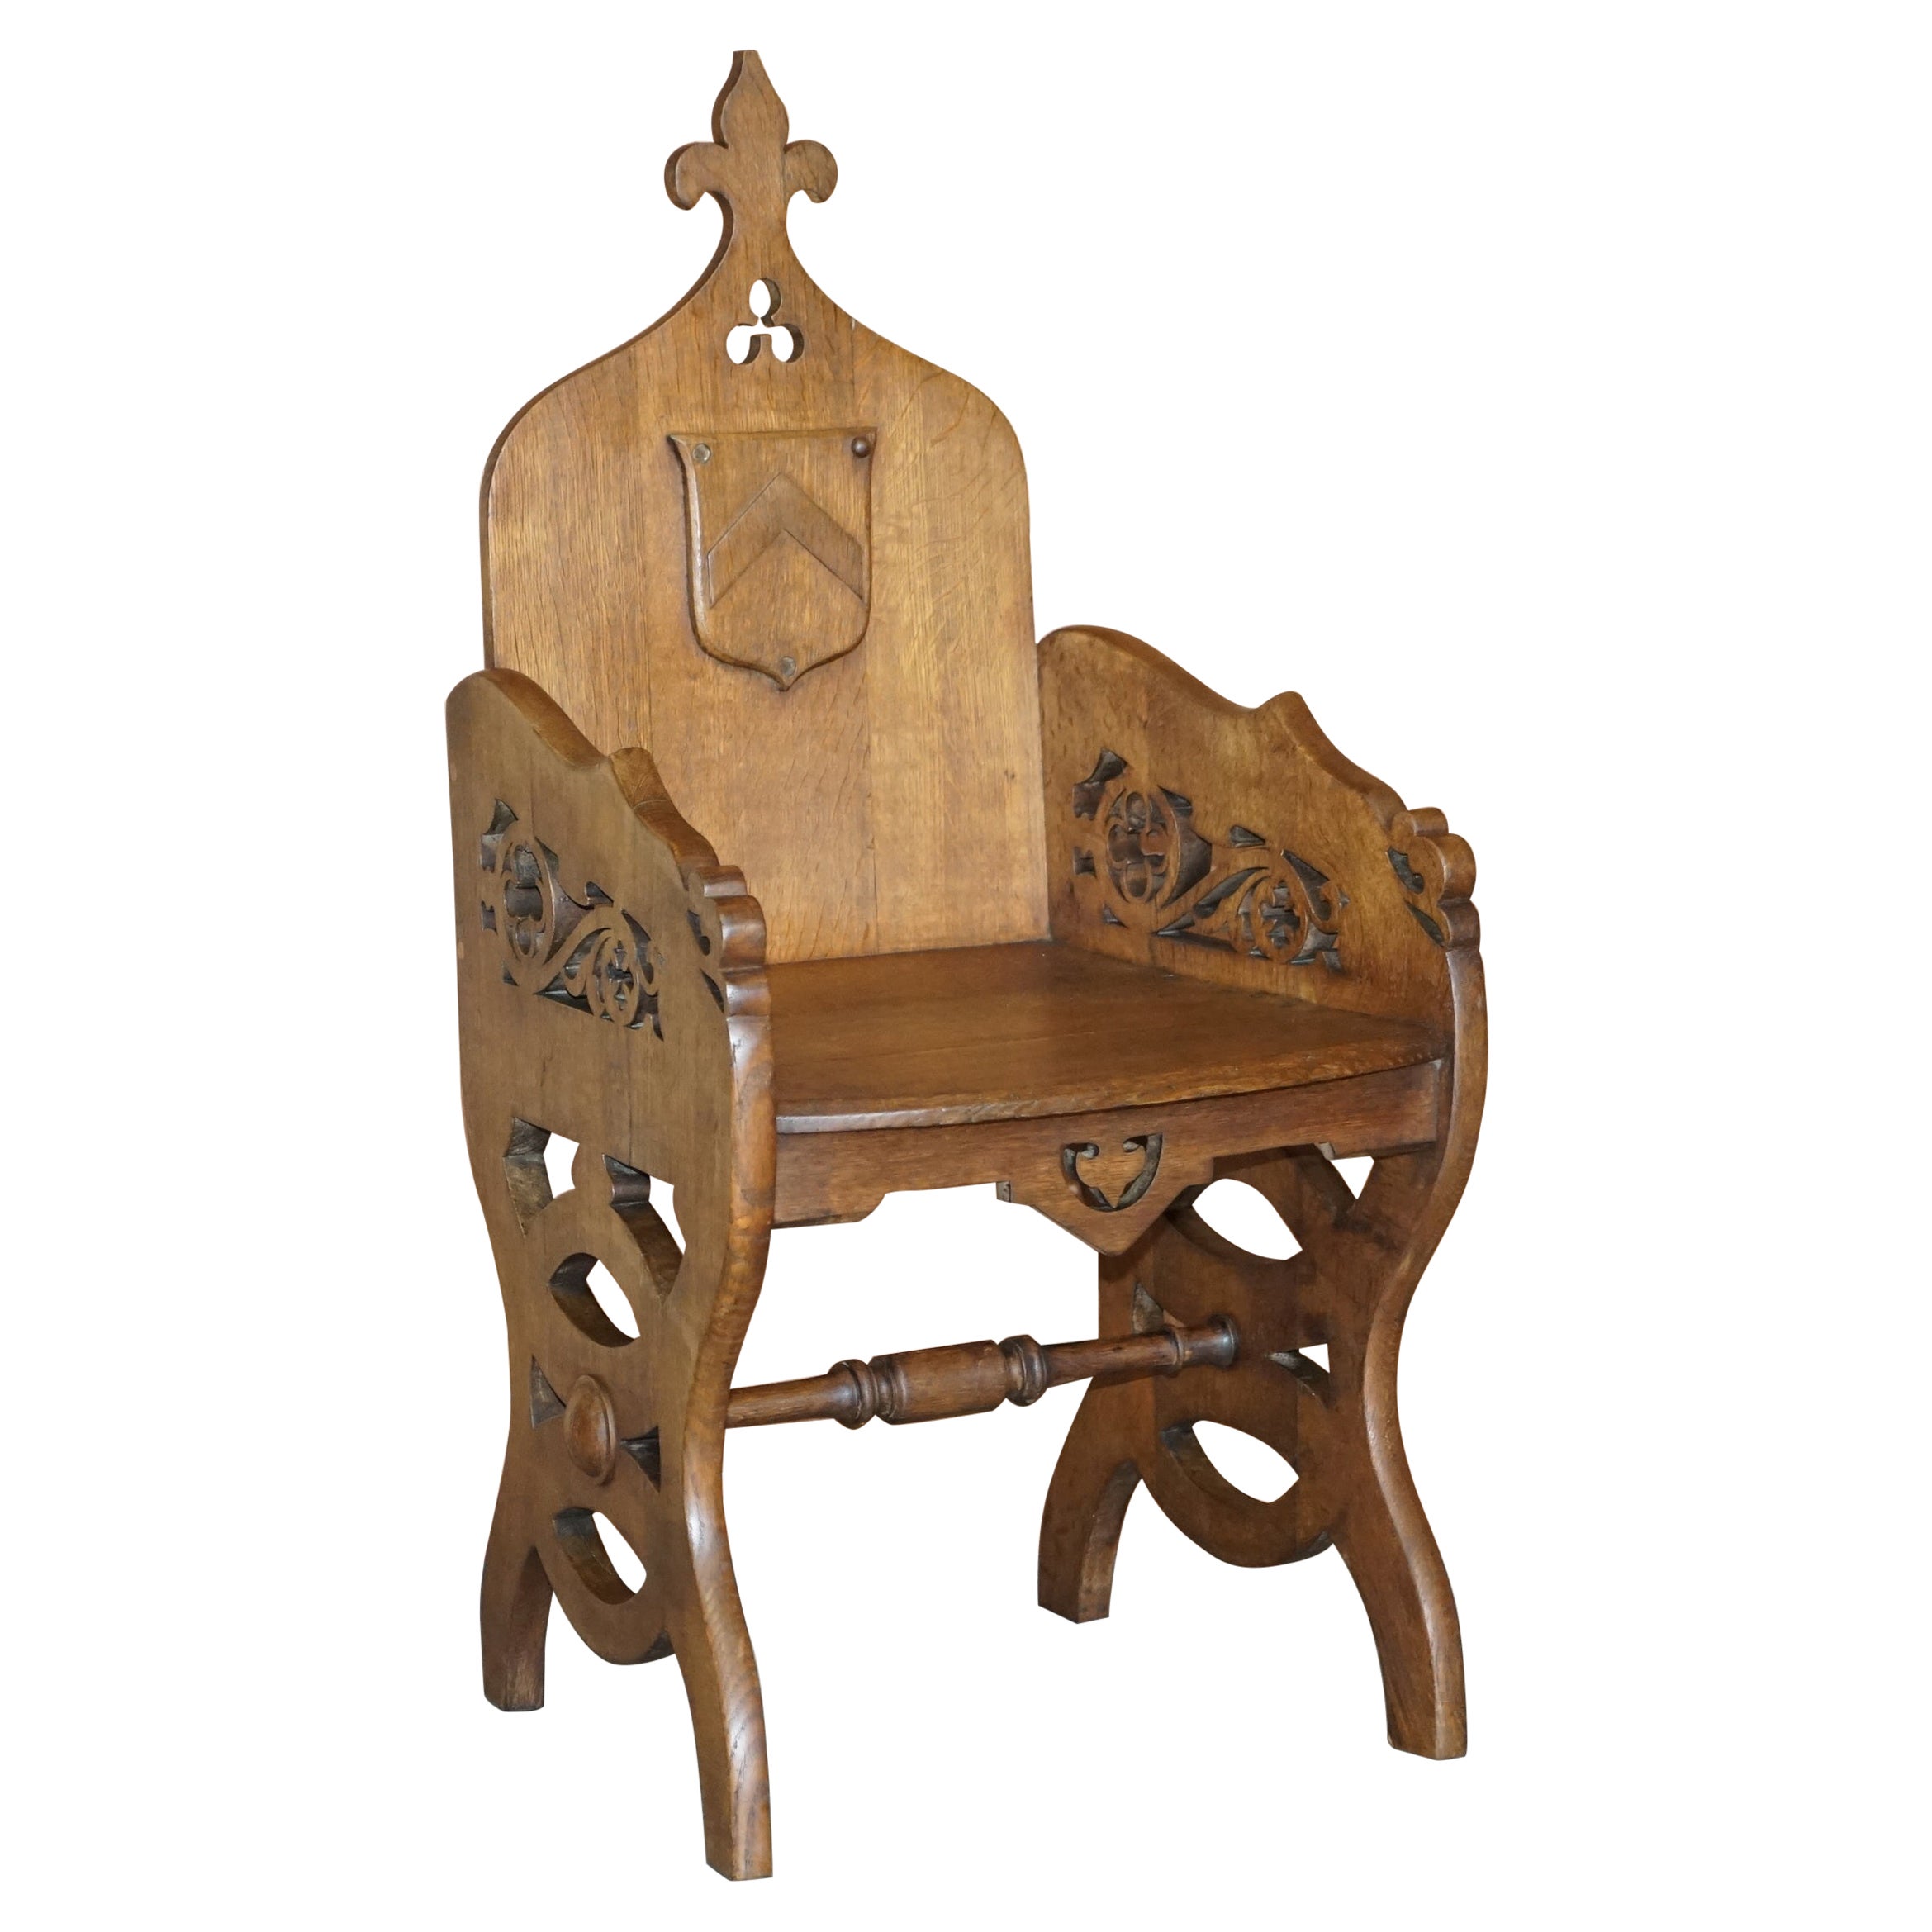 Ravissant fauteuil en chêne anglais ancien de style néo-gothique à dossier en forme de steeple, datant d'environ 1900